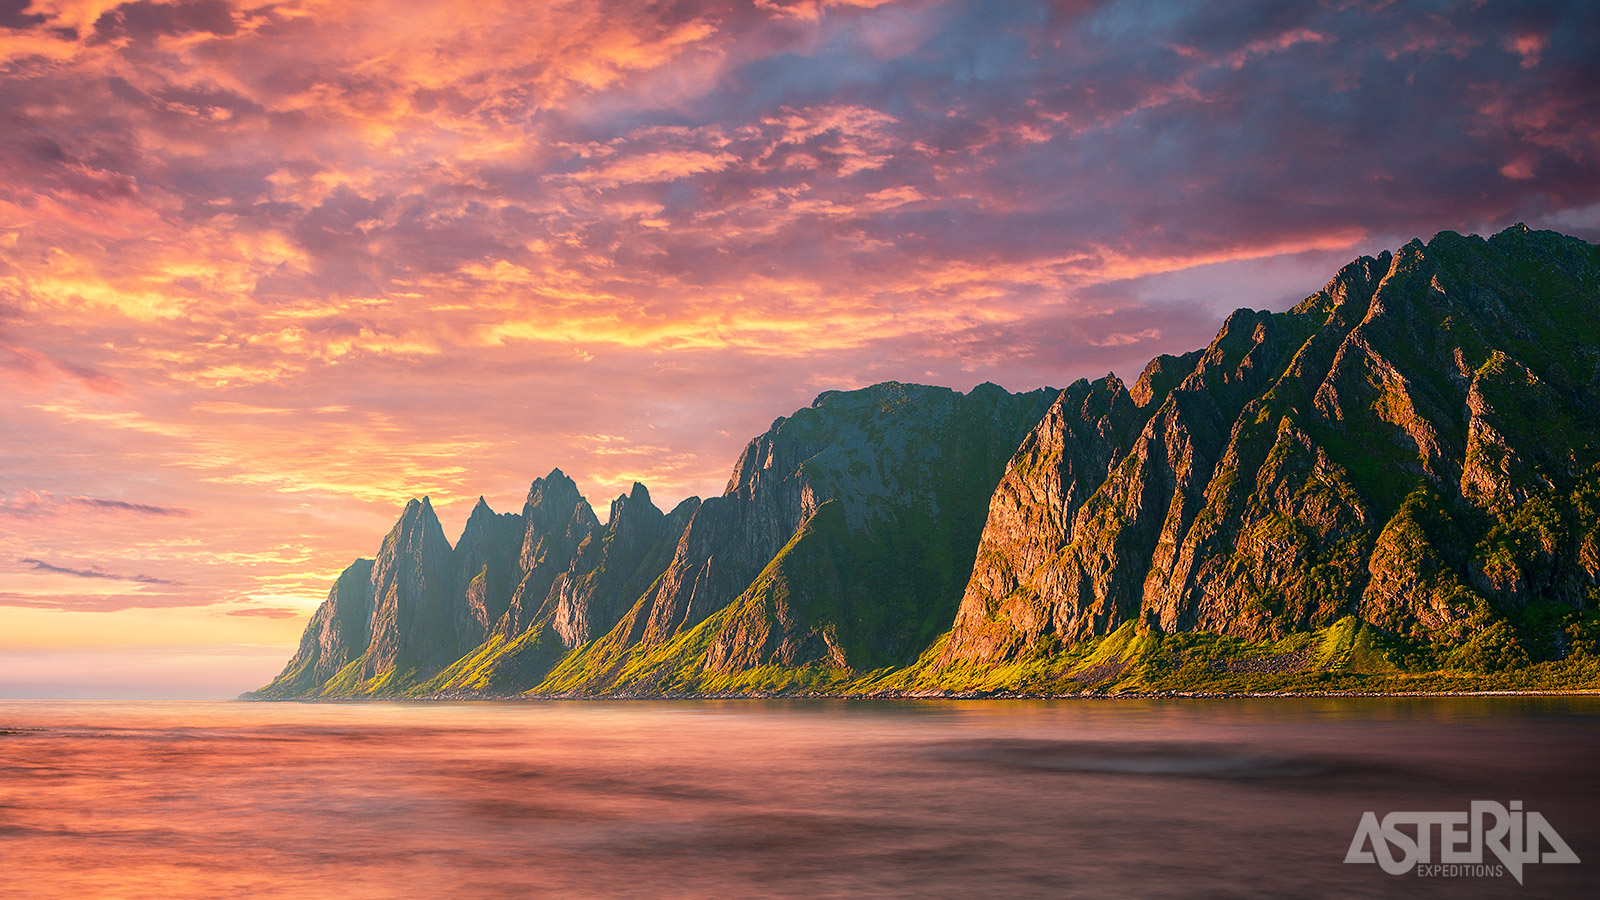 Het mooie Senja is het tweede grootste eiland van Noorwegen, gelegen op 69° noorderbreedte